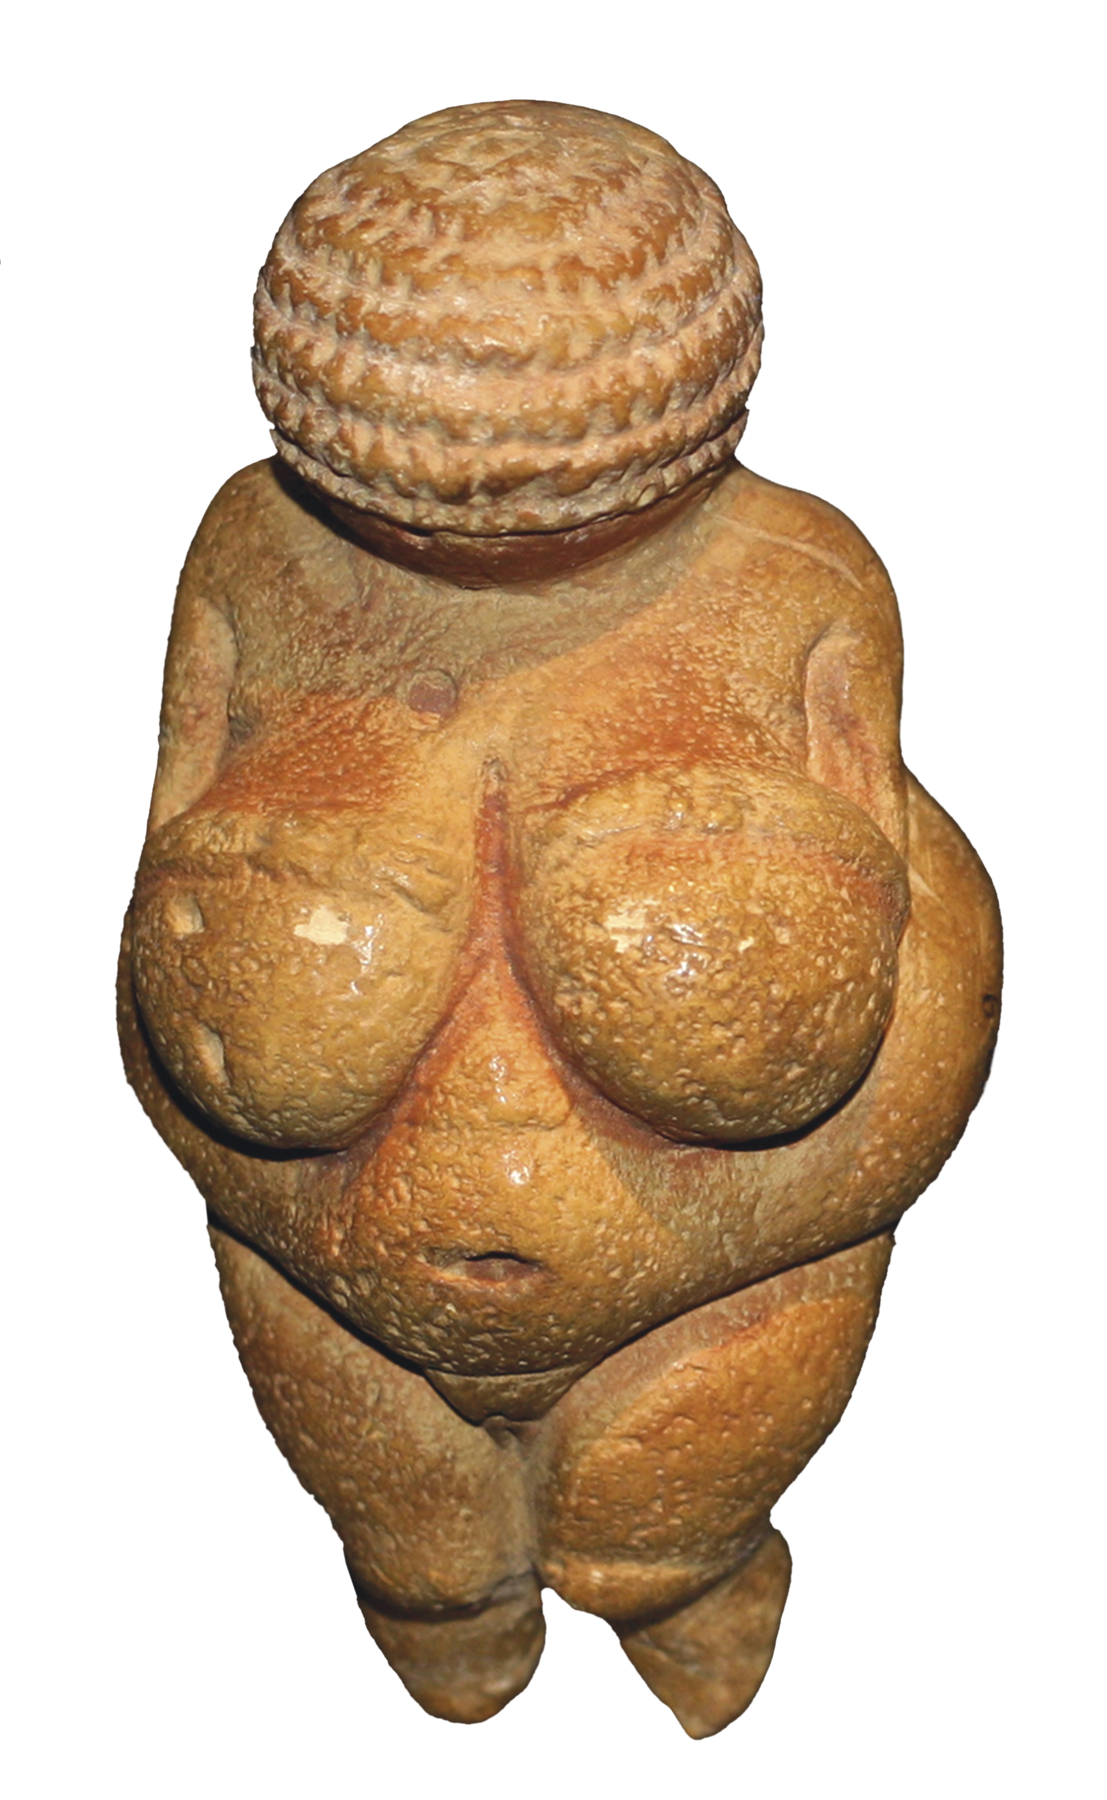 Estátua. Objeto de pedra representando um corpo feminino, com seios fartos e abdome volumoso.